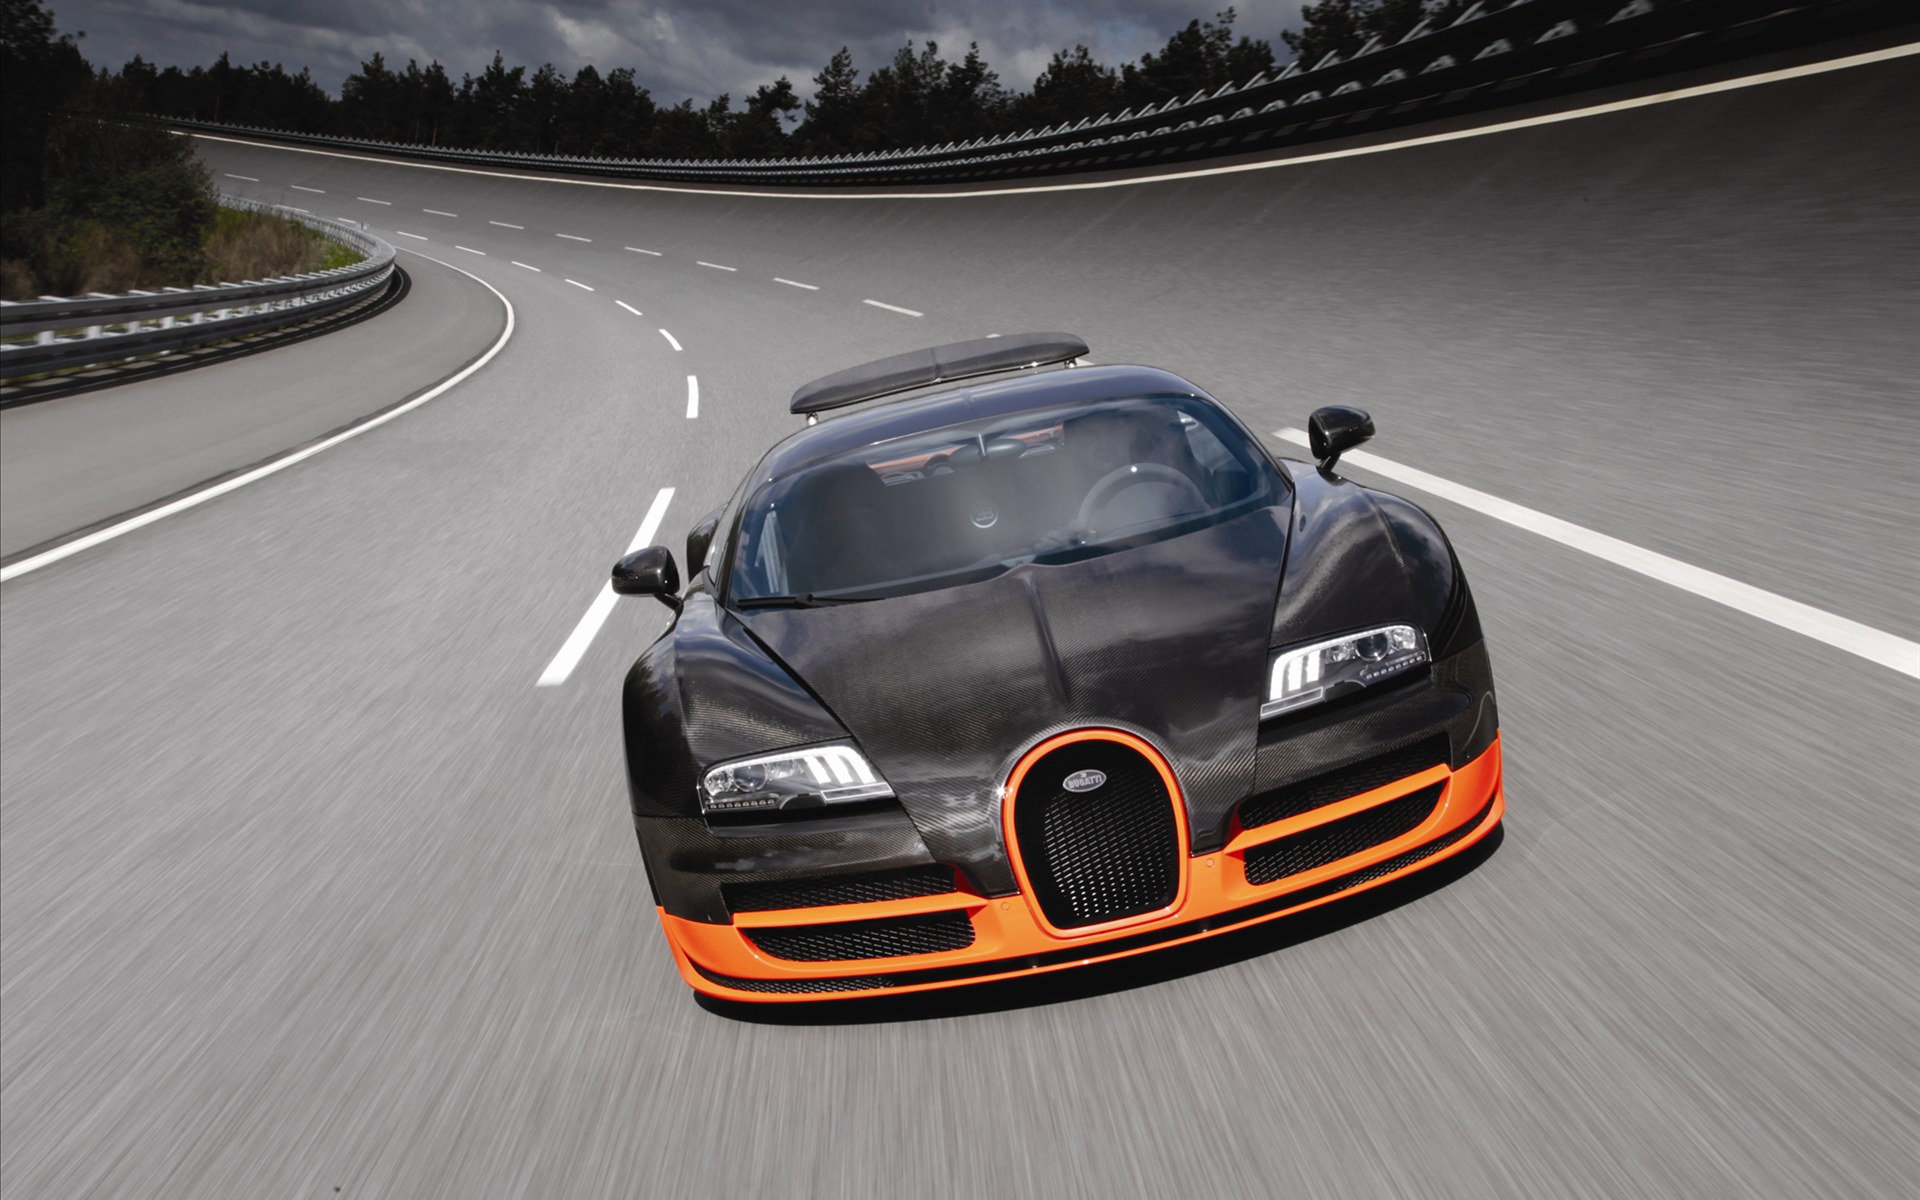 Bugatti Veyron(ӵ) 16.4 Super Sports Car 2011(ֽ18)